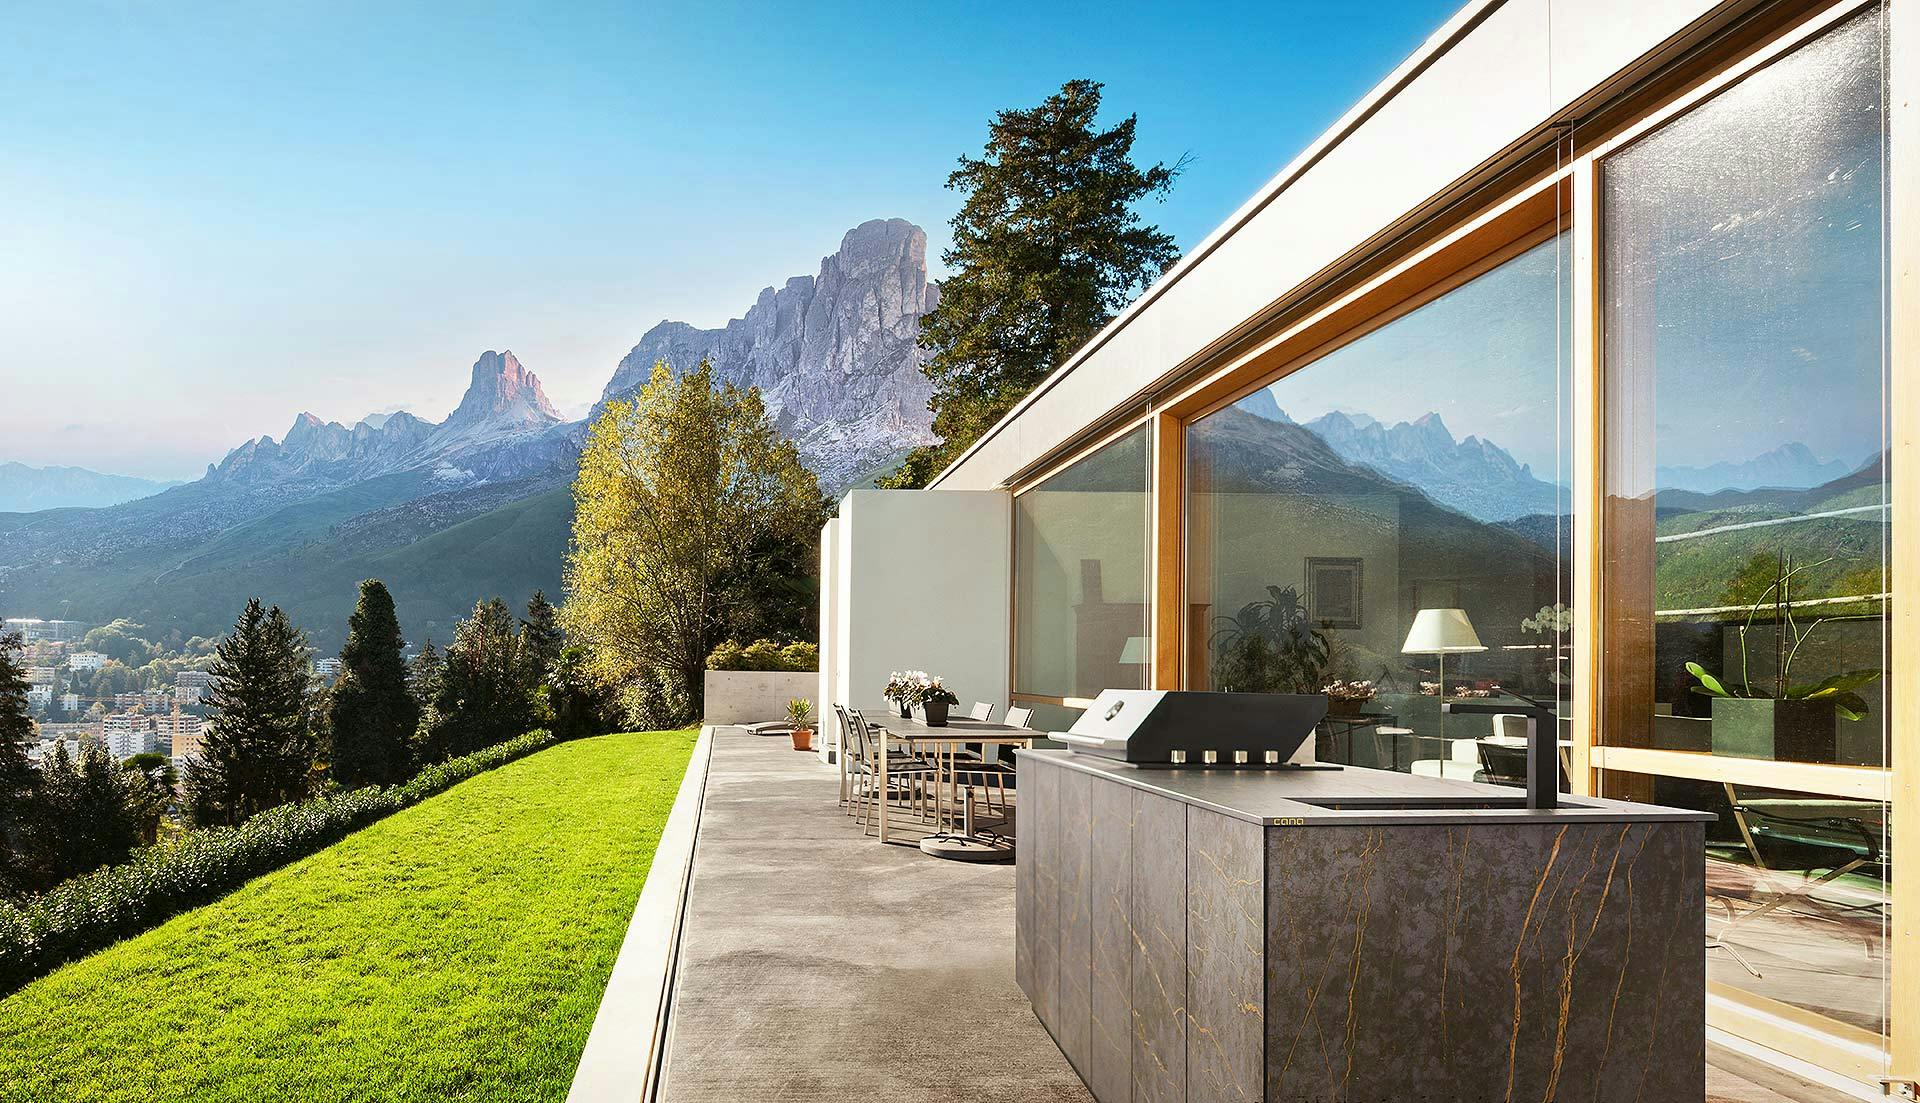 Bildnummer 40 des aktuellen Abschnitts von Outdoor kitchens for a luxury garden von Cosentino Deutschland